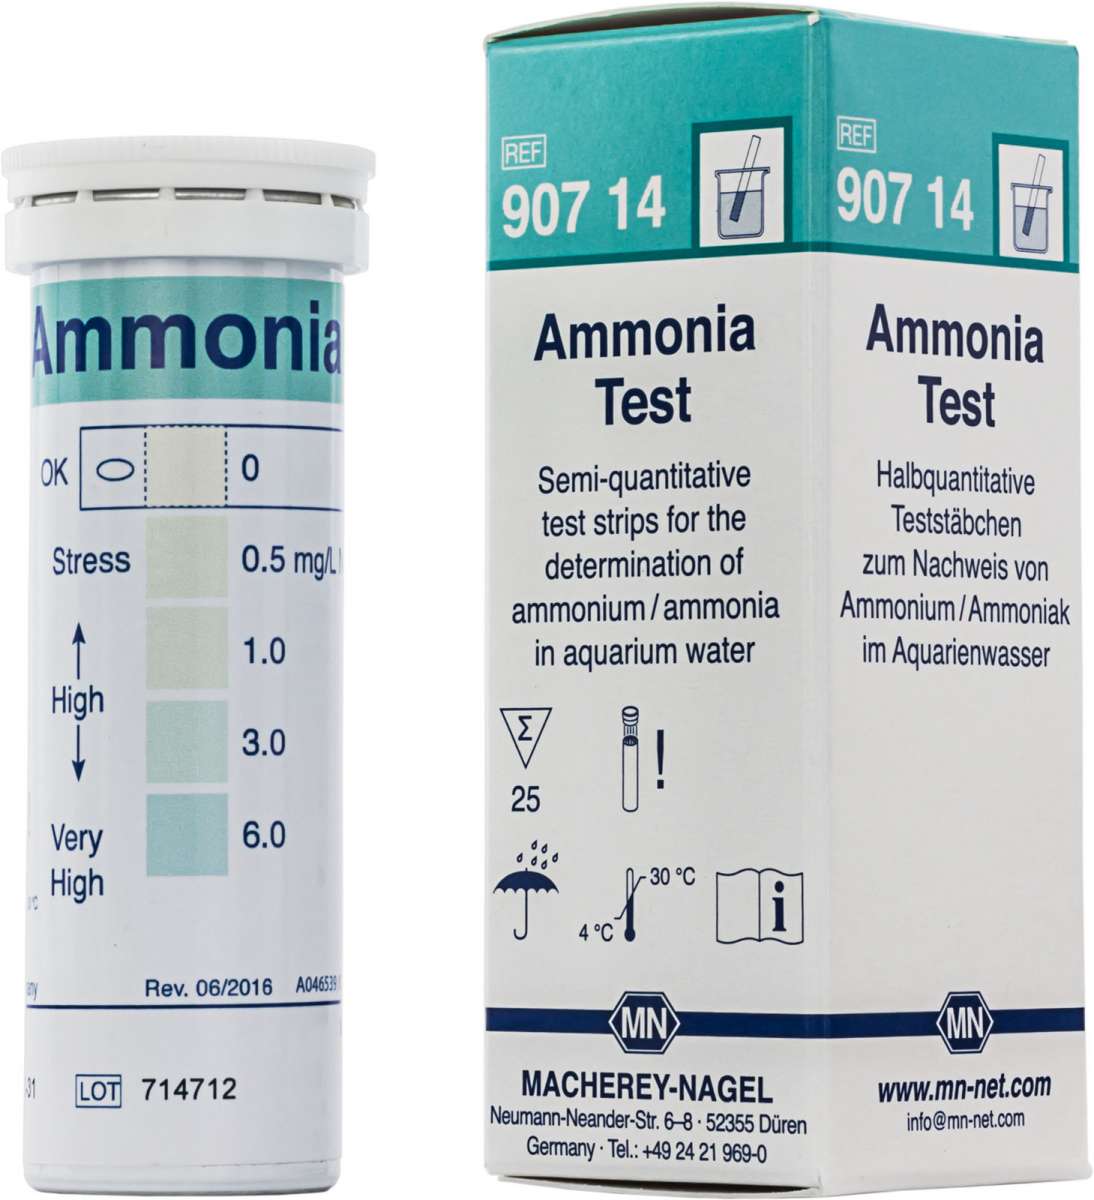 Ammonia Test (Tube of 25 test strips)